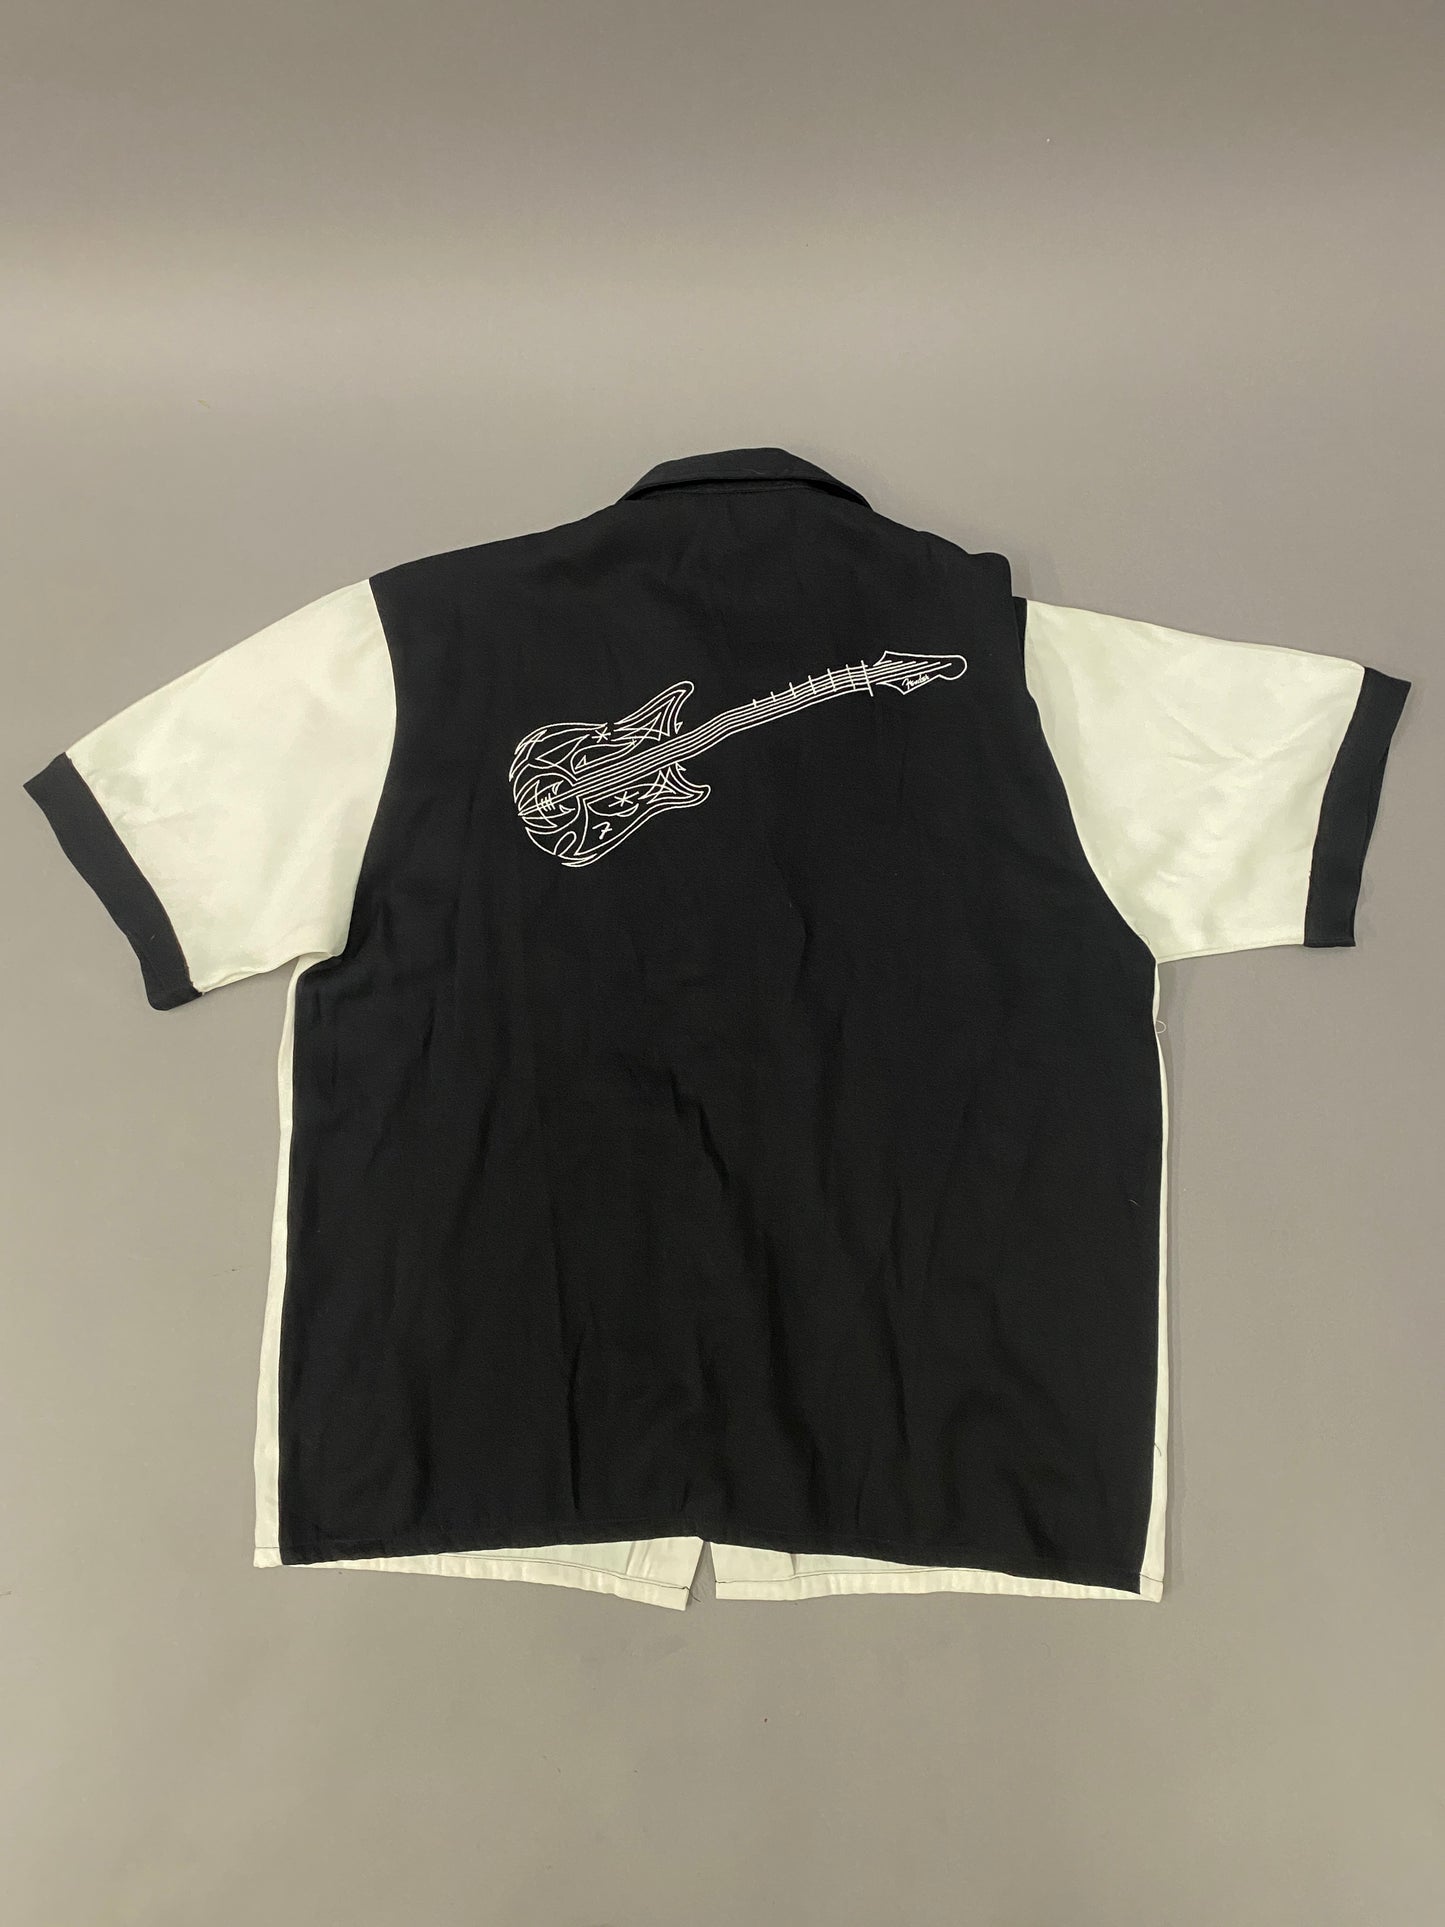 Fender 90's shirt